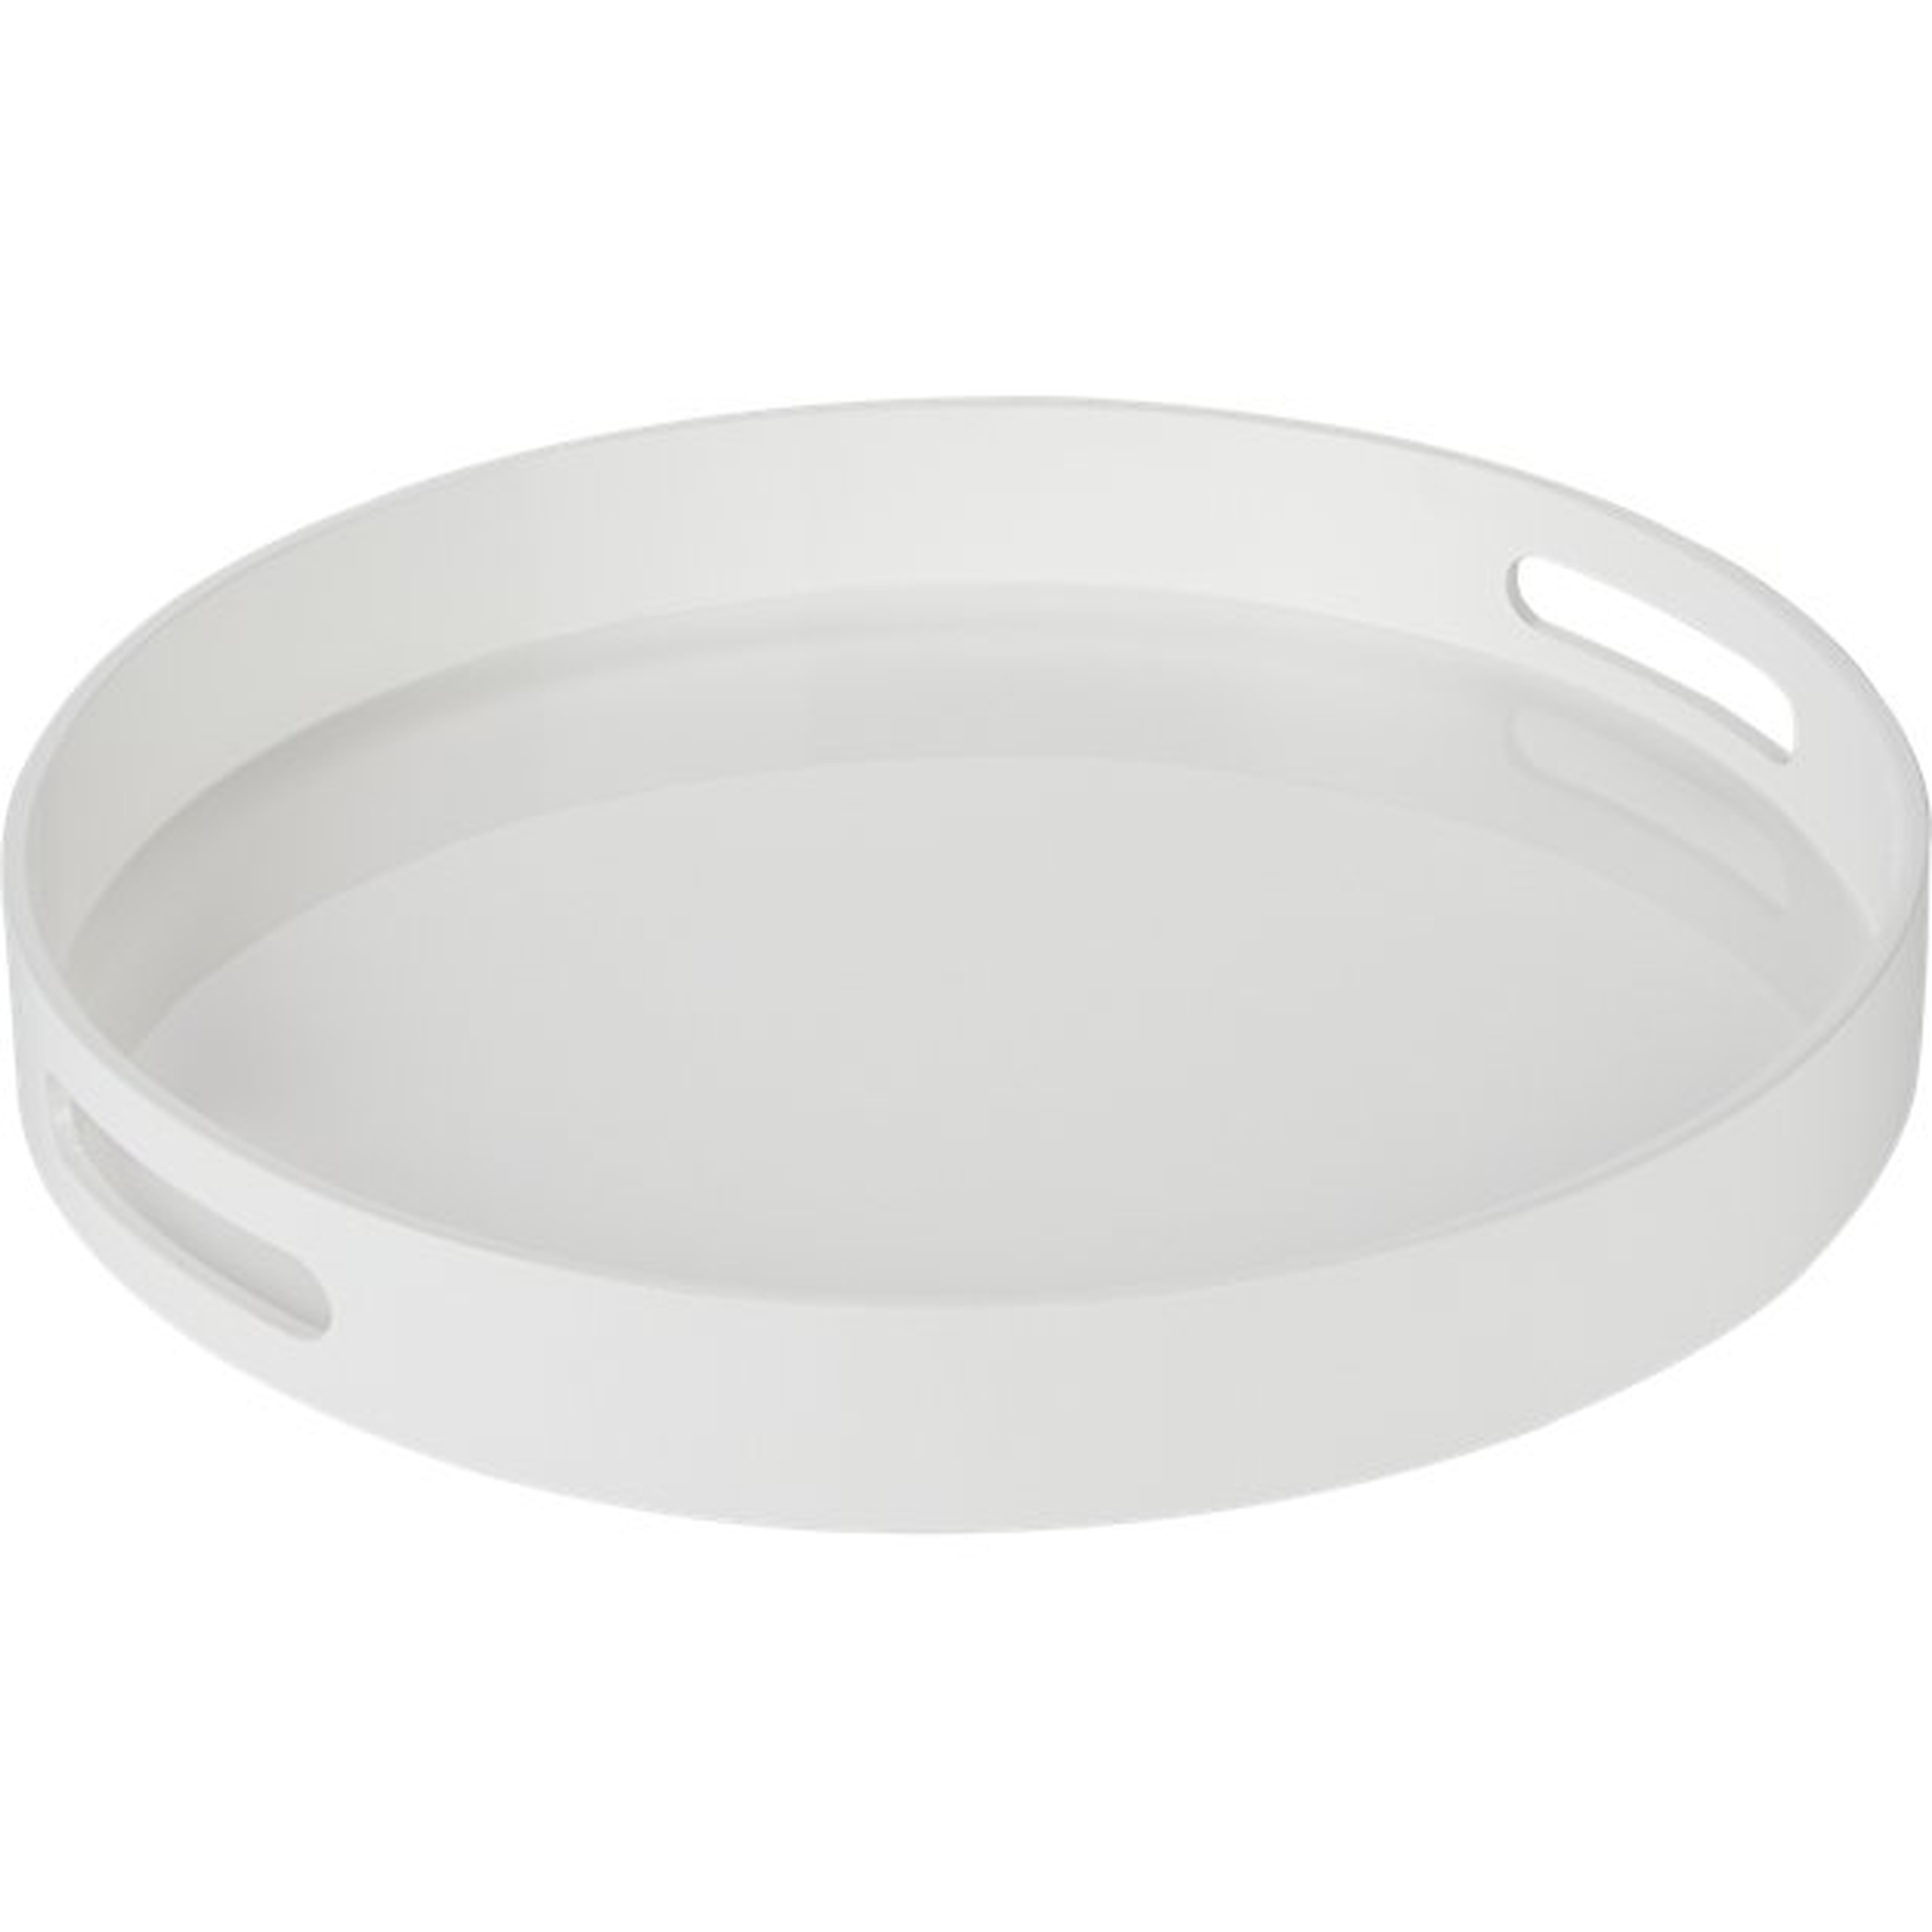 high-gloss round white tray - CB2